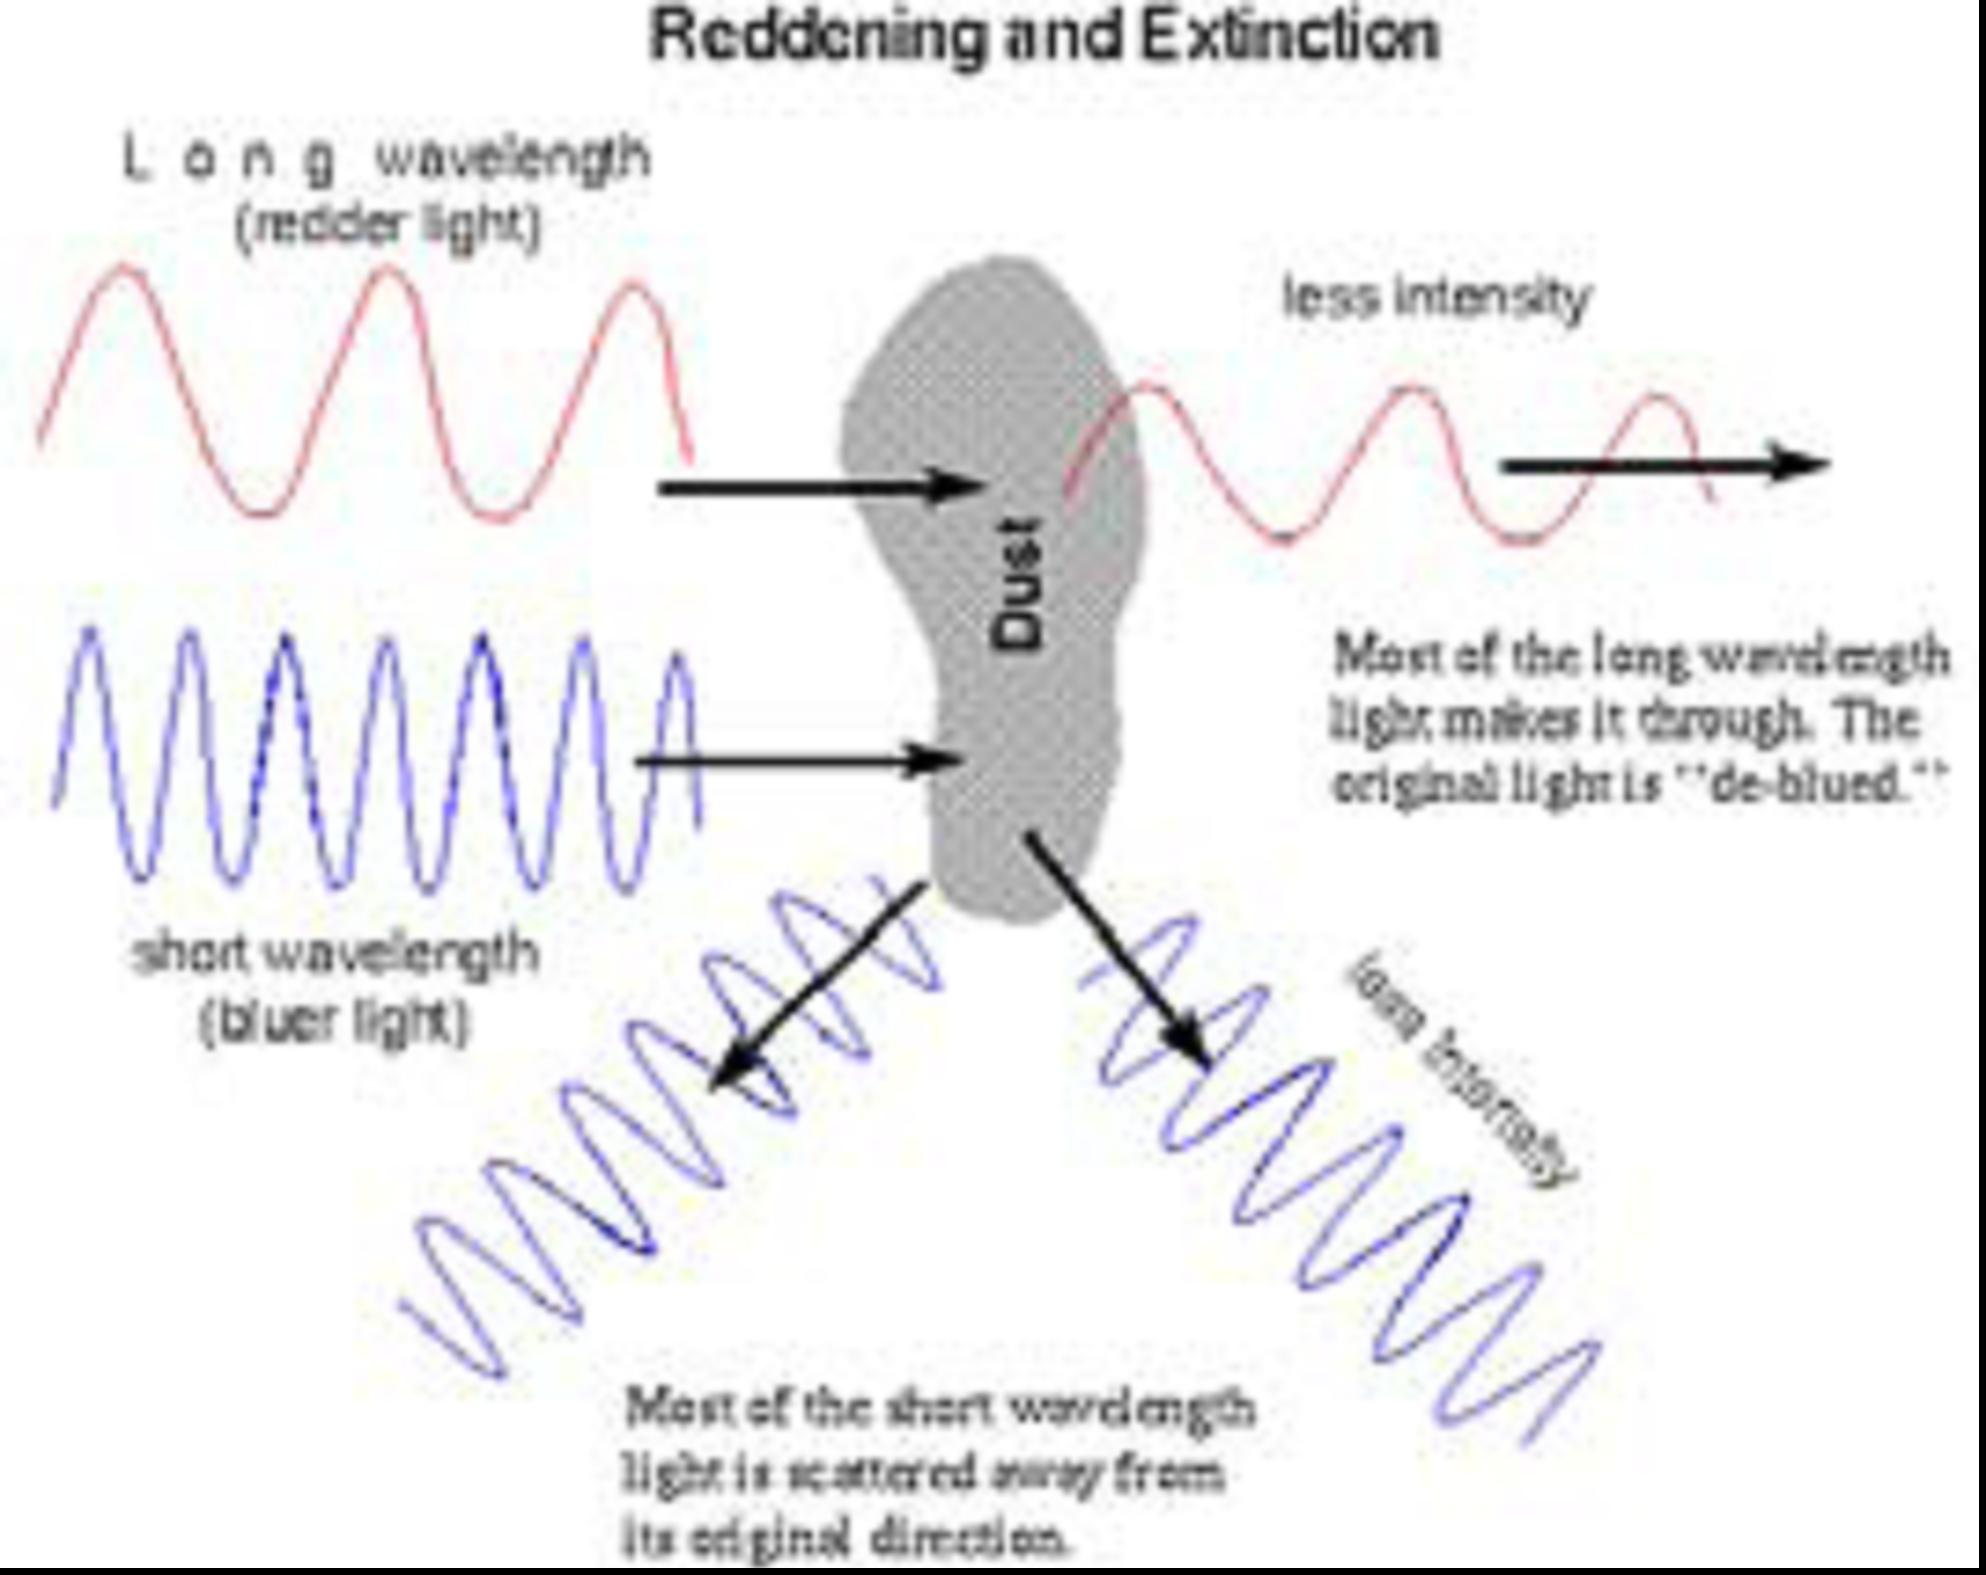 El polvo interestelar y la luz Luz roja Enrojecimiento y Extinción menos intensa 4 Polvo Longitudes de onda larga se trasmiten sin dispersarse.